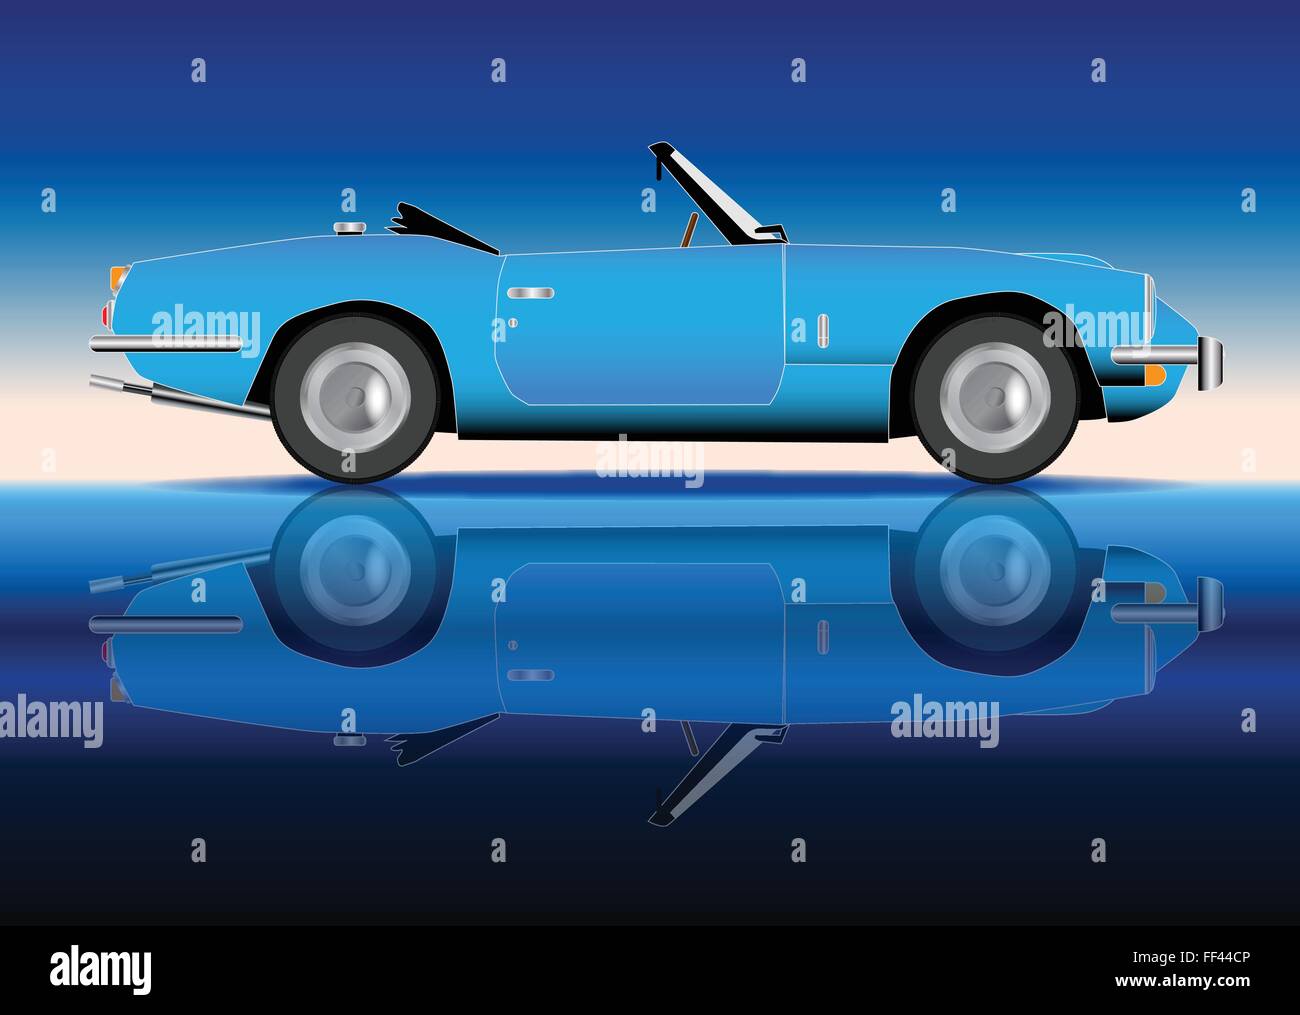 Une vieille voiture de sport de style classique en bleu sur fond bleu Illustration de Vecteur